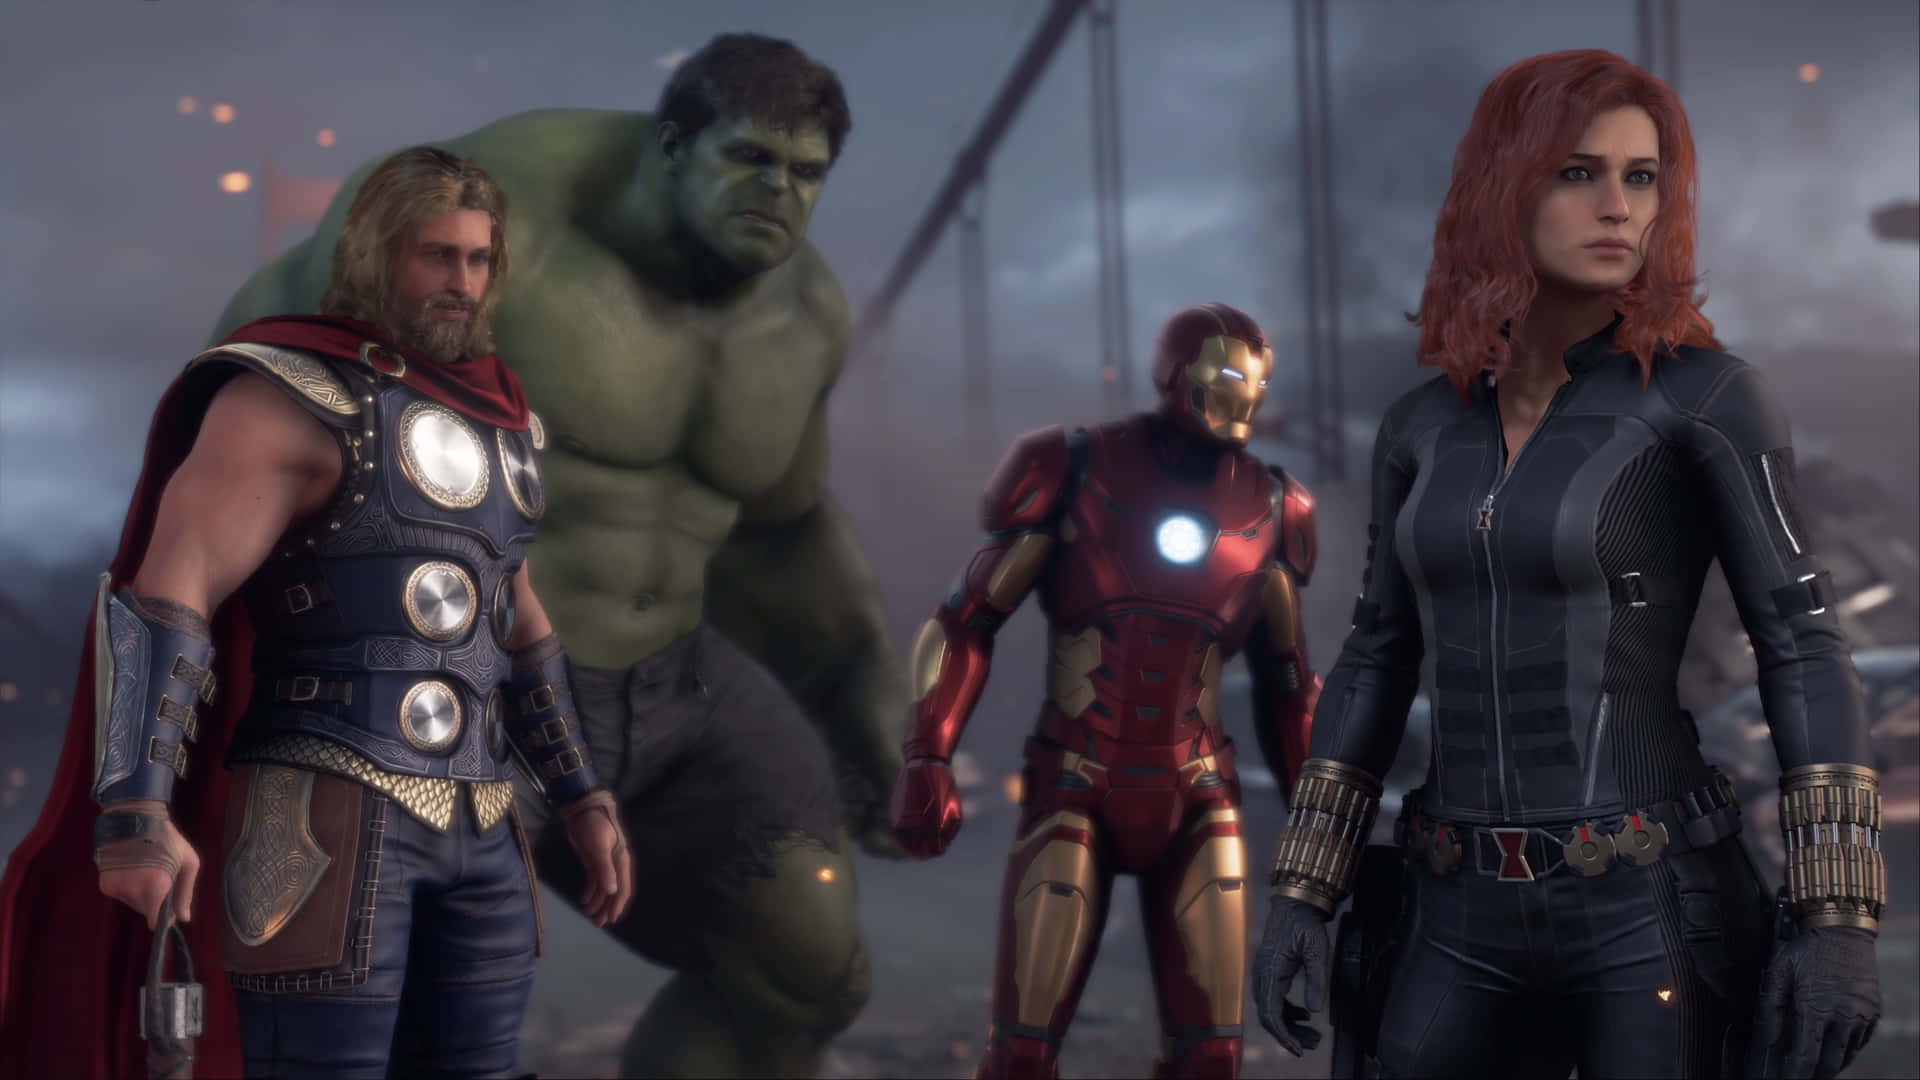 Marvel's Avengers assemble!